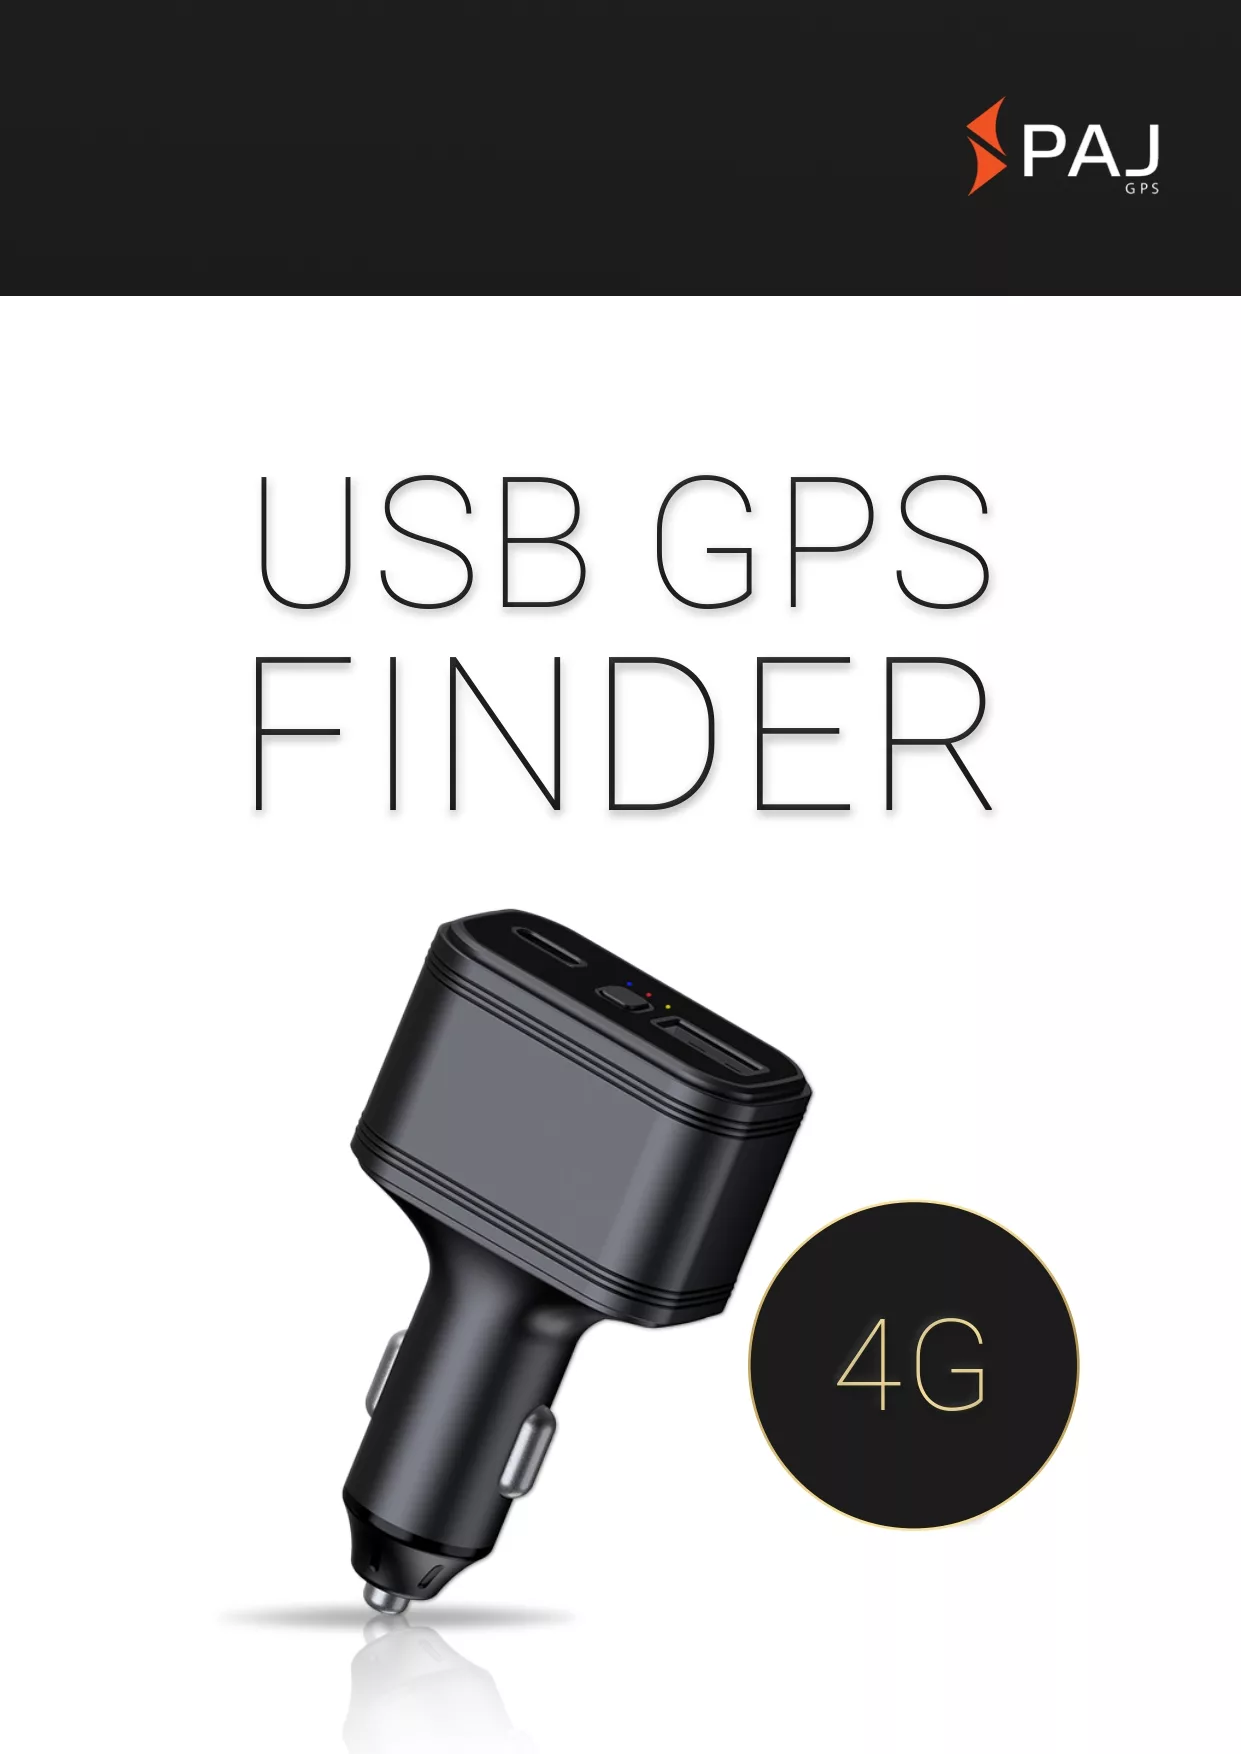 Image de couverture pour fiche technique USB Finder 4G